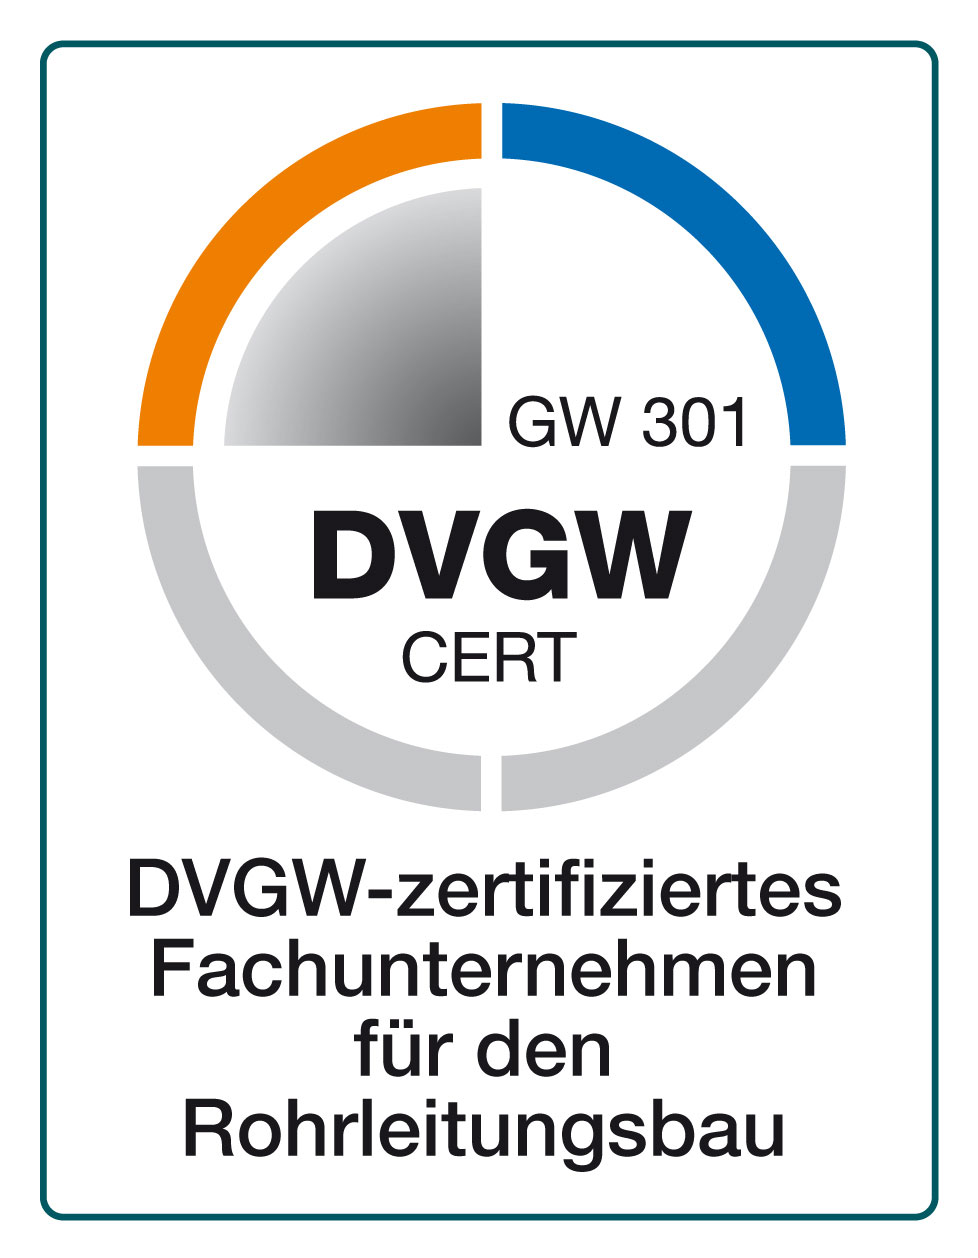 DVGW-zertifiziertes Fachunternehmen für den Rohrleitungsbau